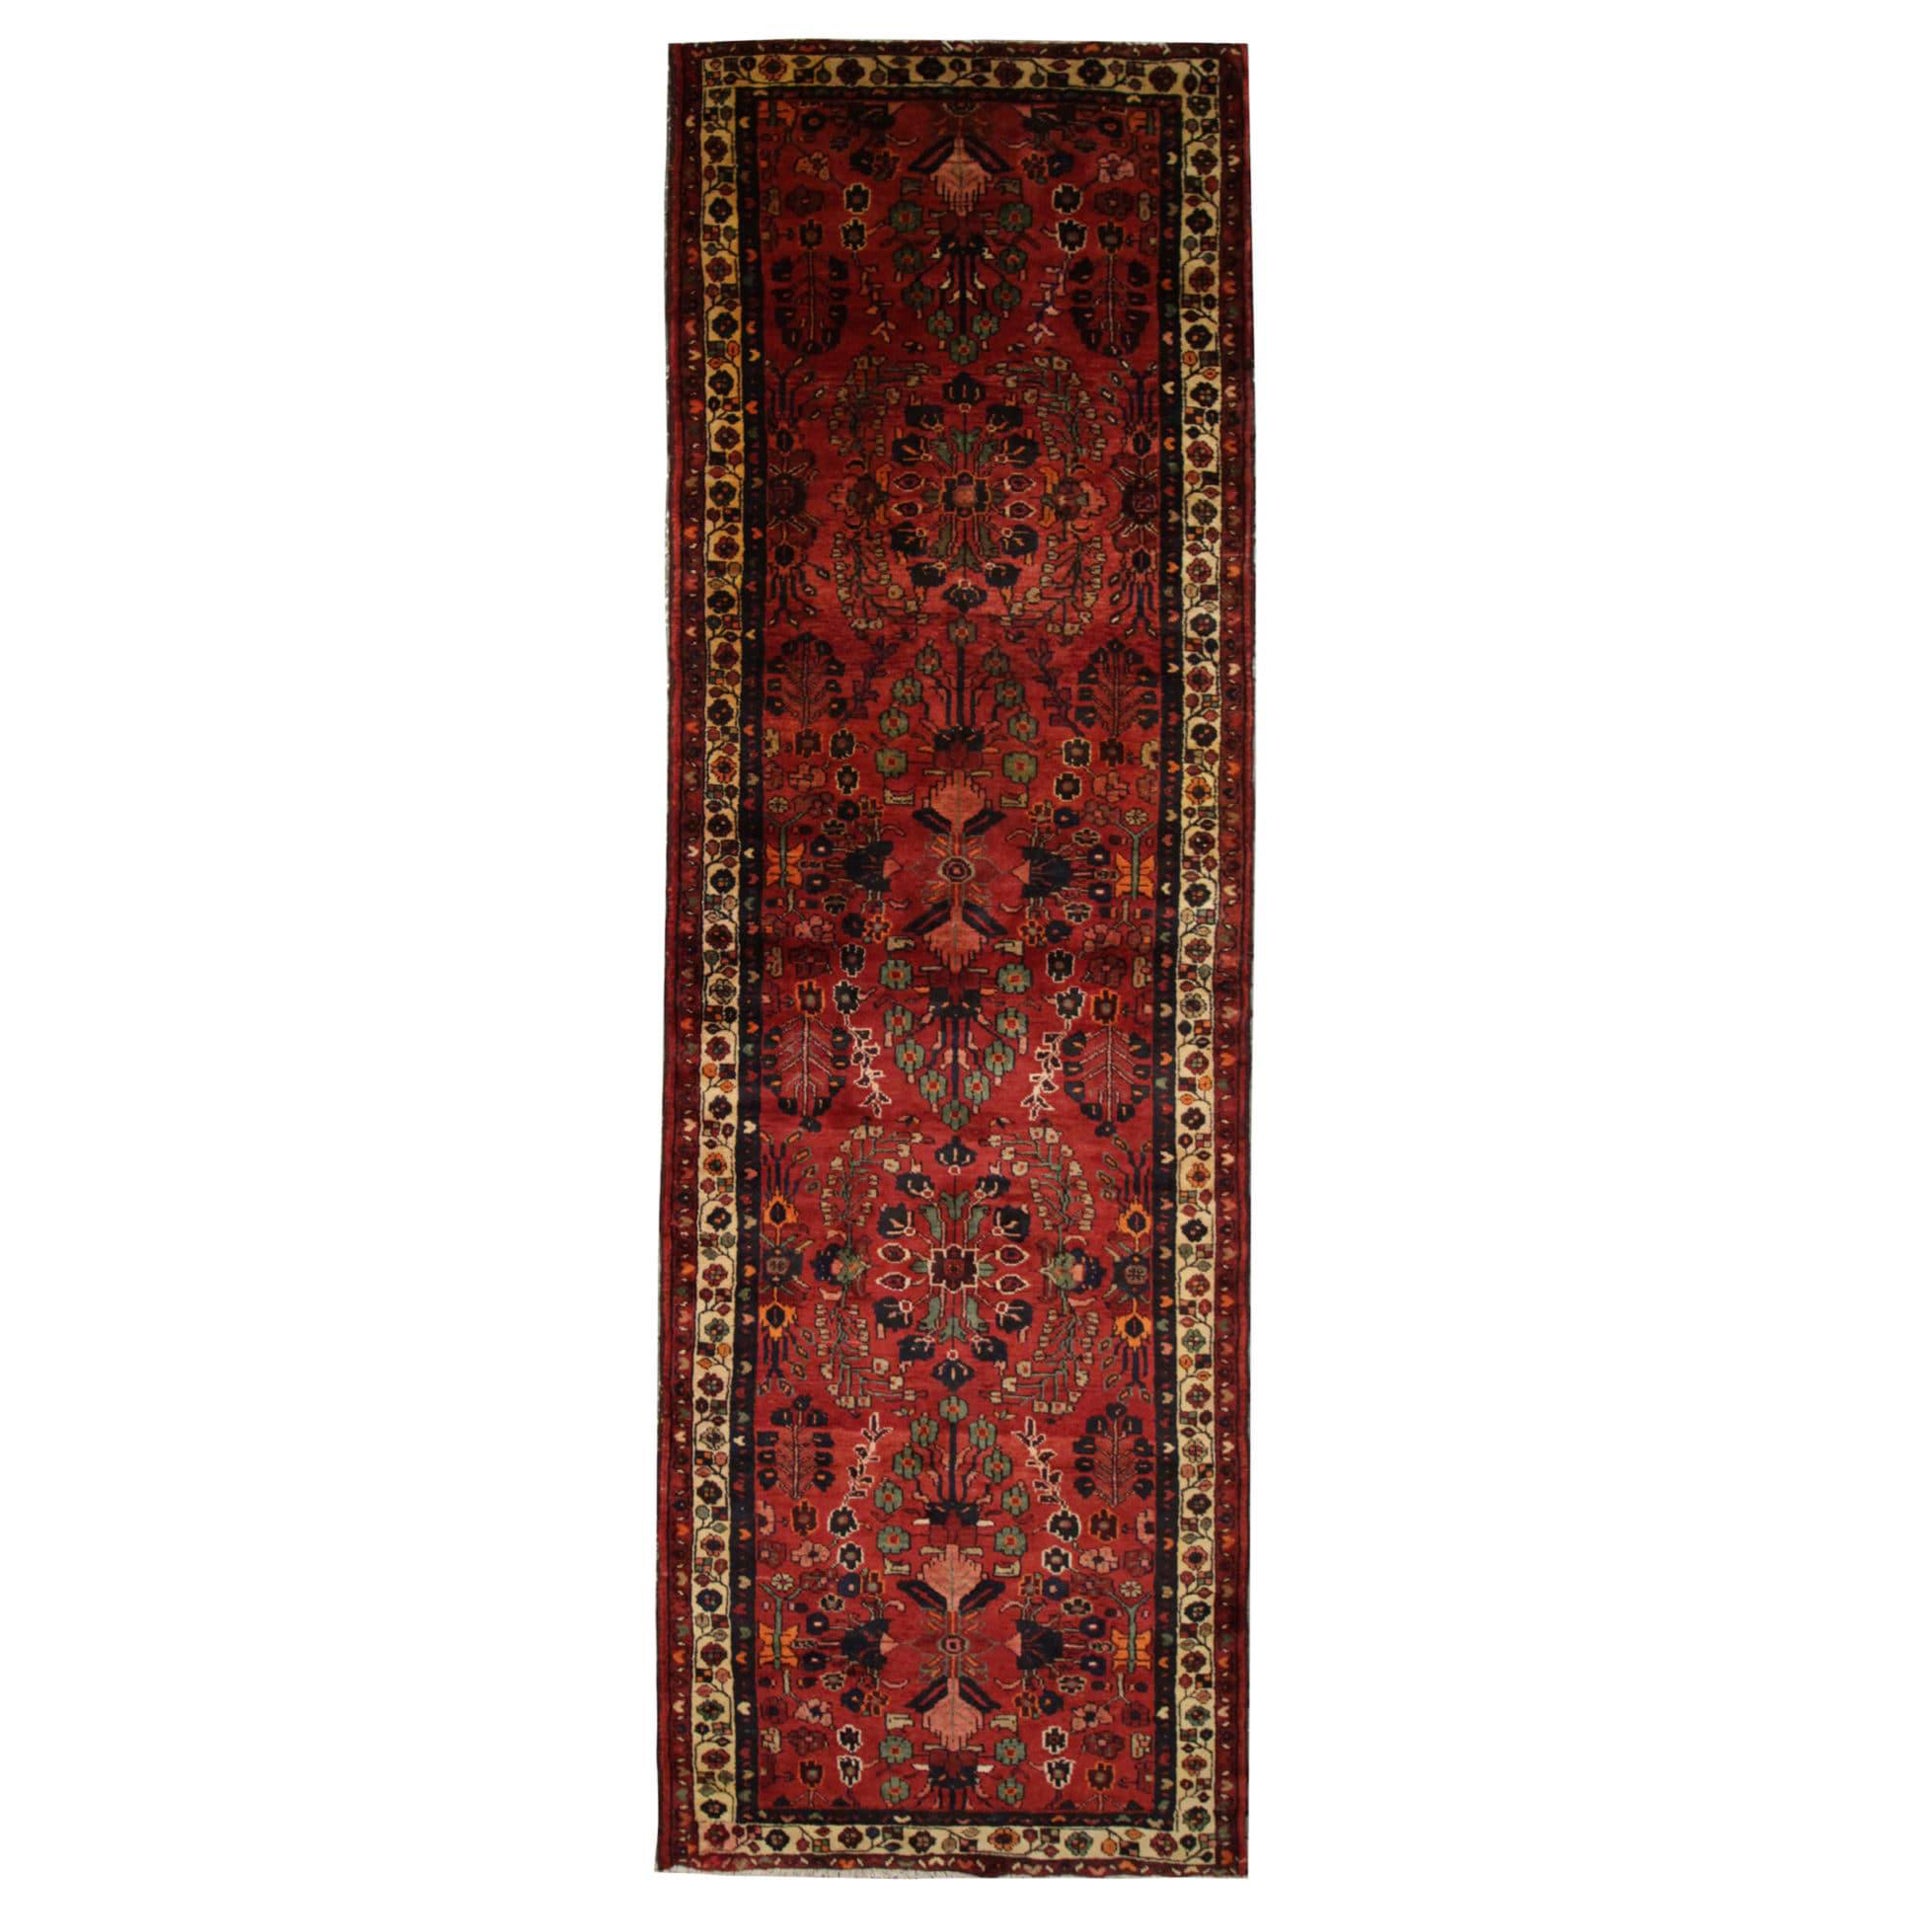 Burgandy Runner Rug, Floral Vintage Wool Carpet Runner